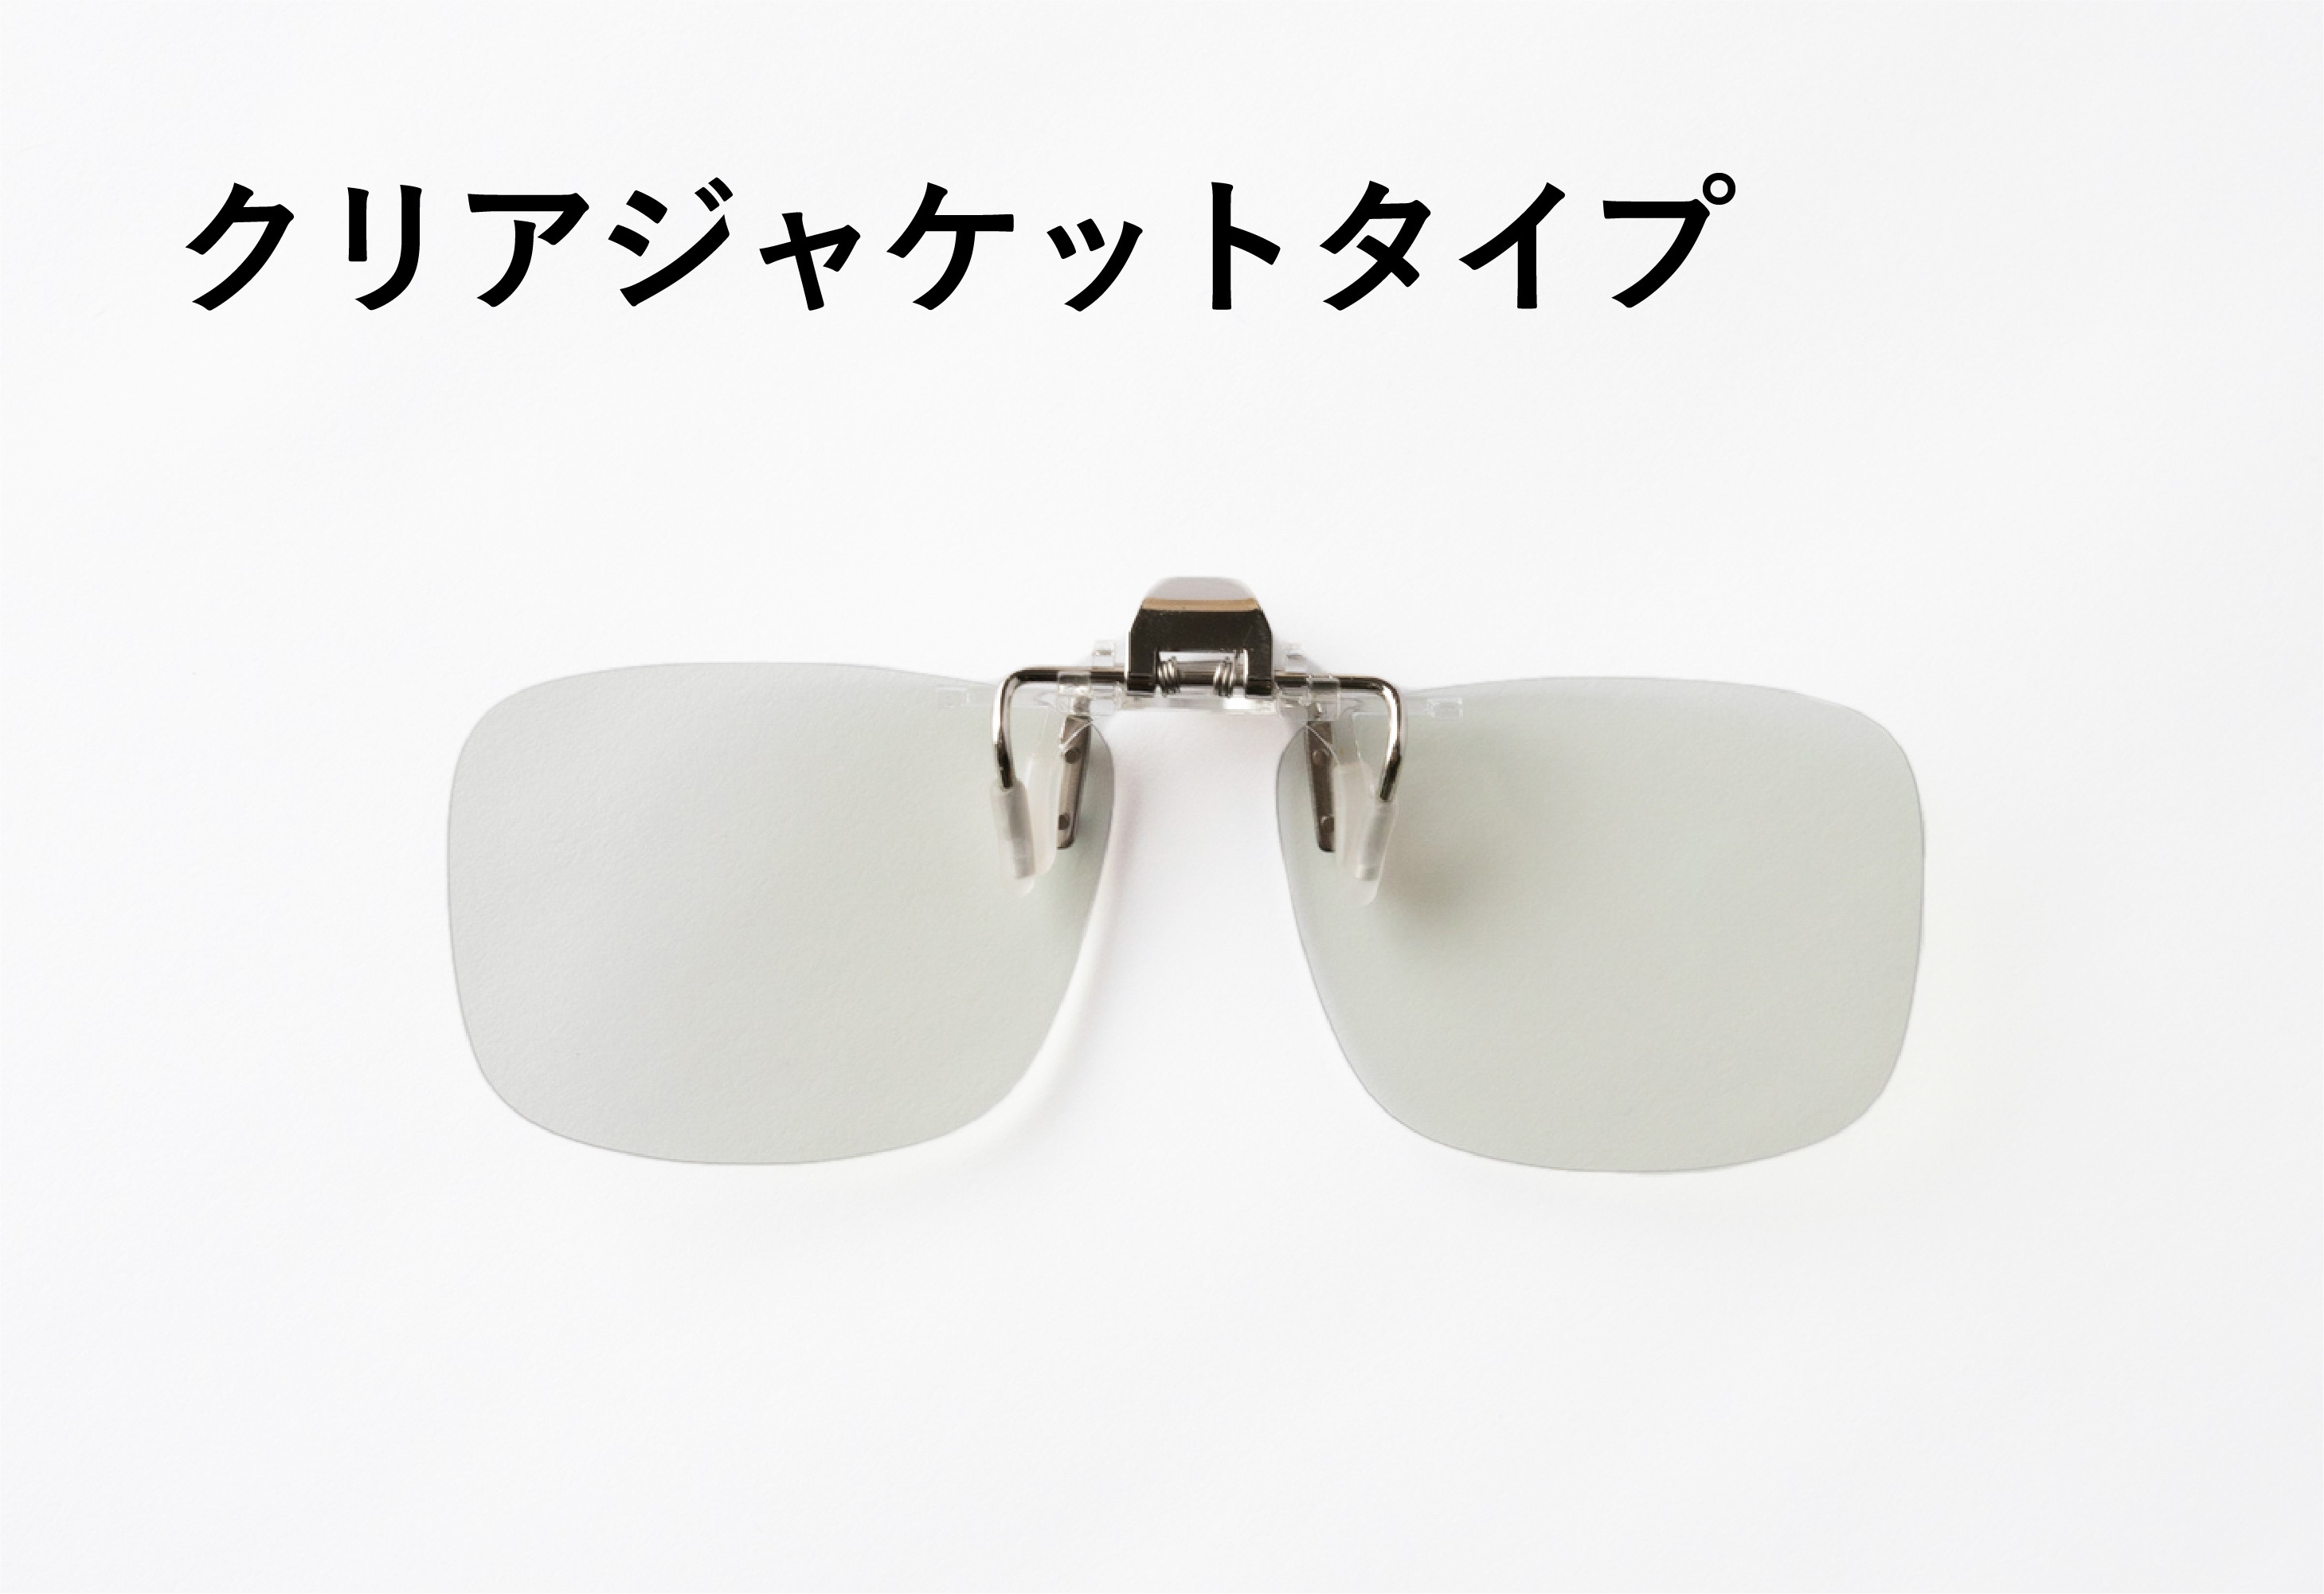 夜専用メガネ「ナイトグラス」を6月25日(金)よりMakuakeにて先行販売開始！｜東海光学株式会社のプレスリリース